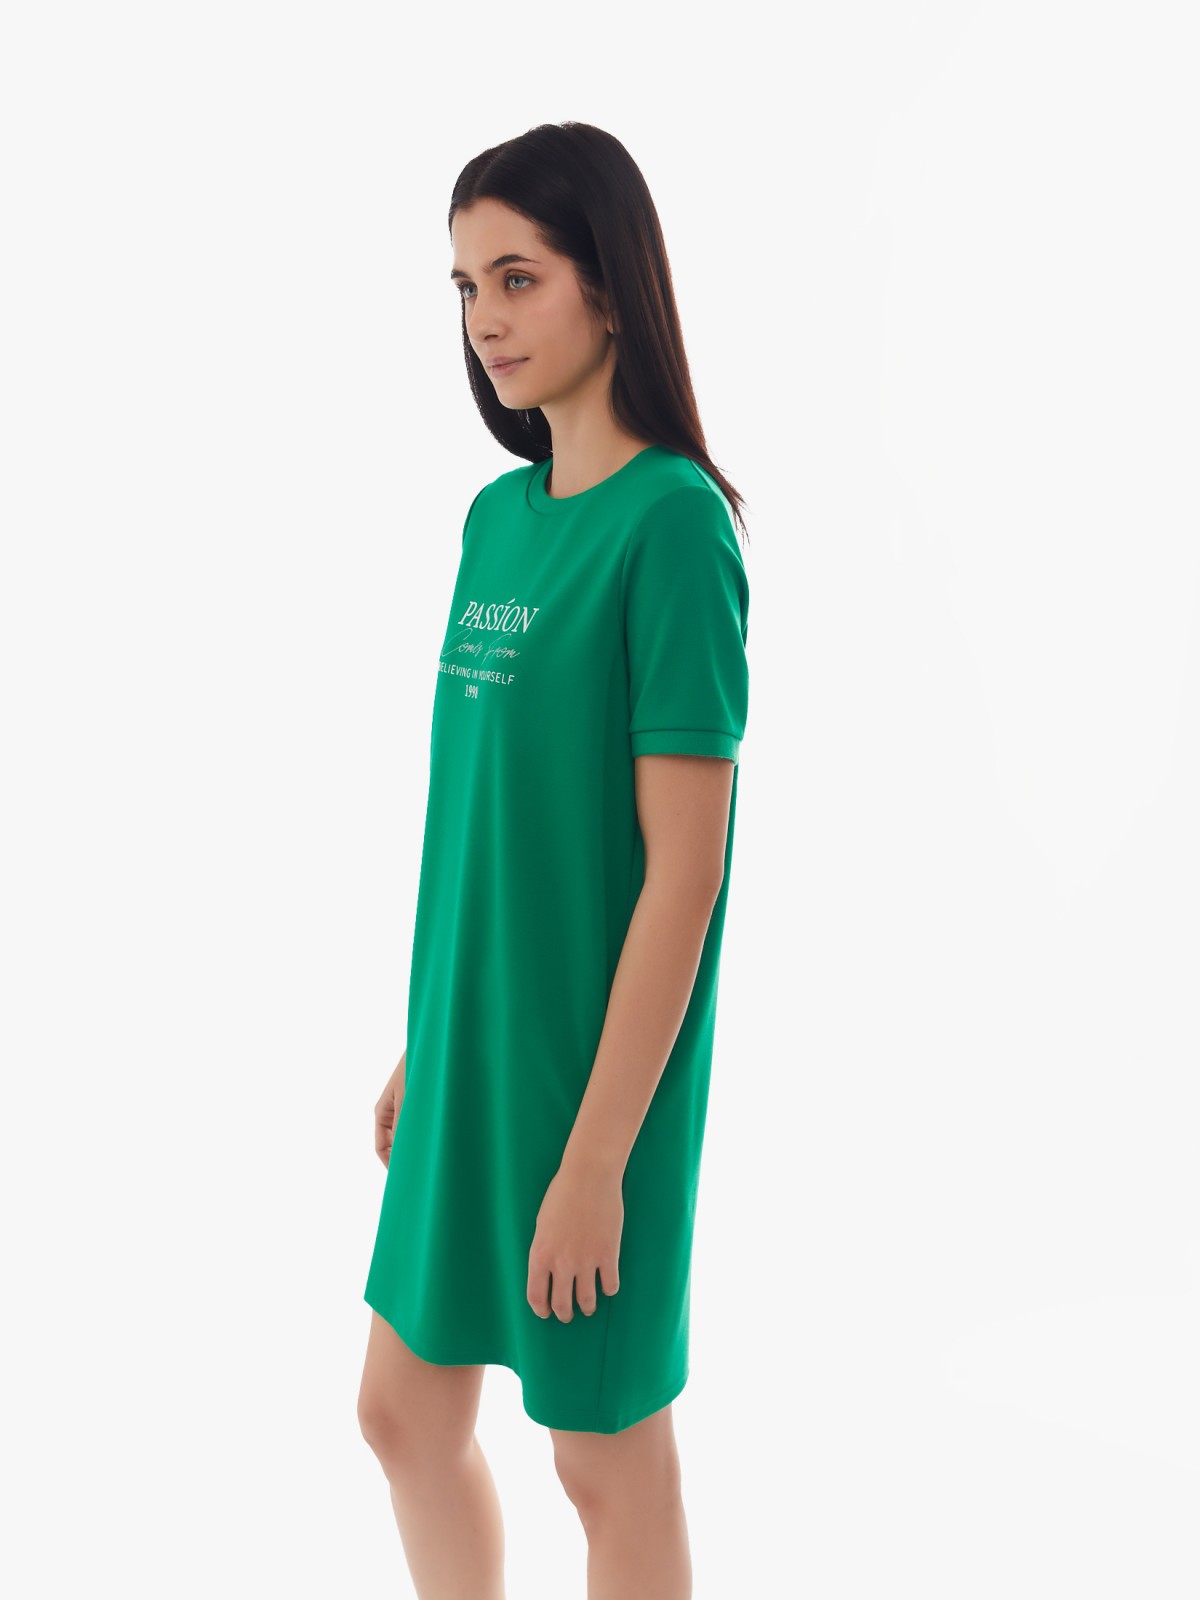 Платье-футболка с коротким рукавом и принтом-надписью zolla 024138135132, цвет зеленый, размер S - фото 3